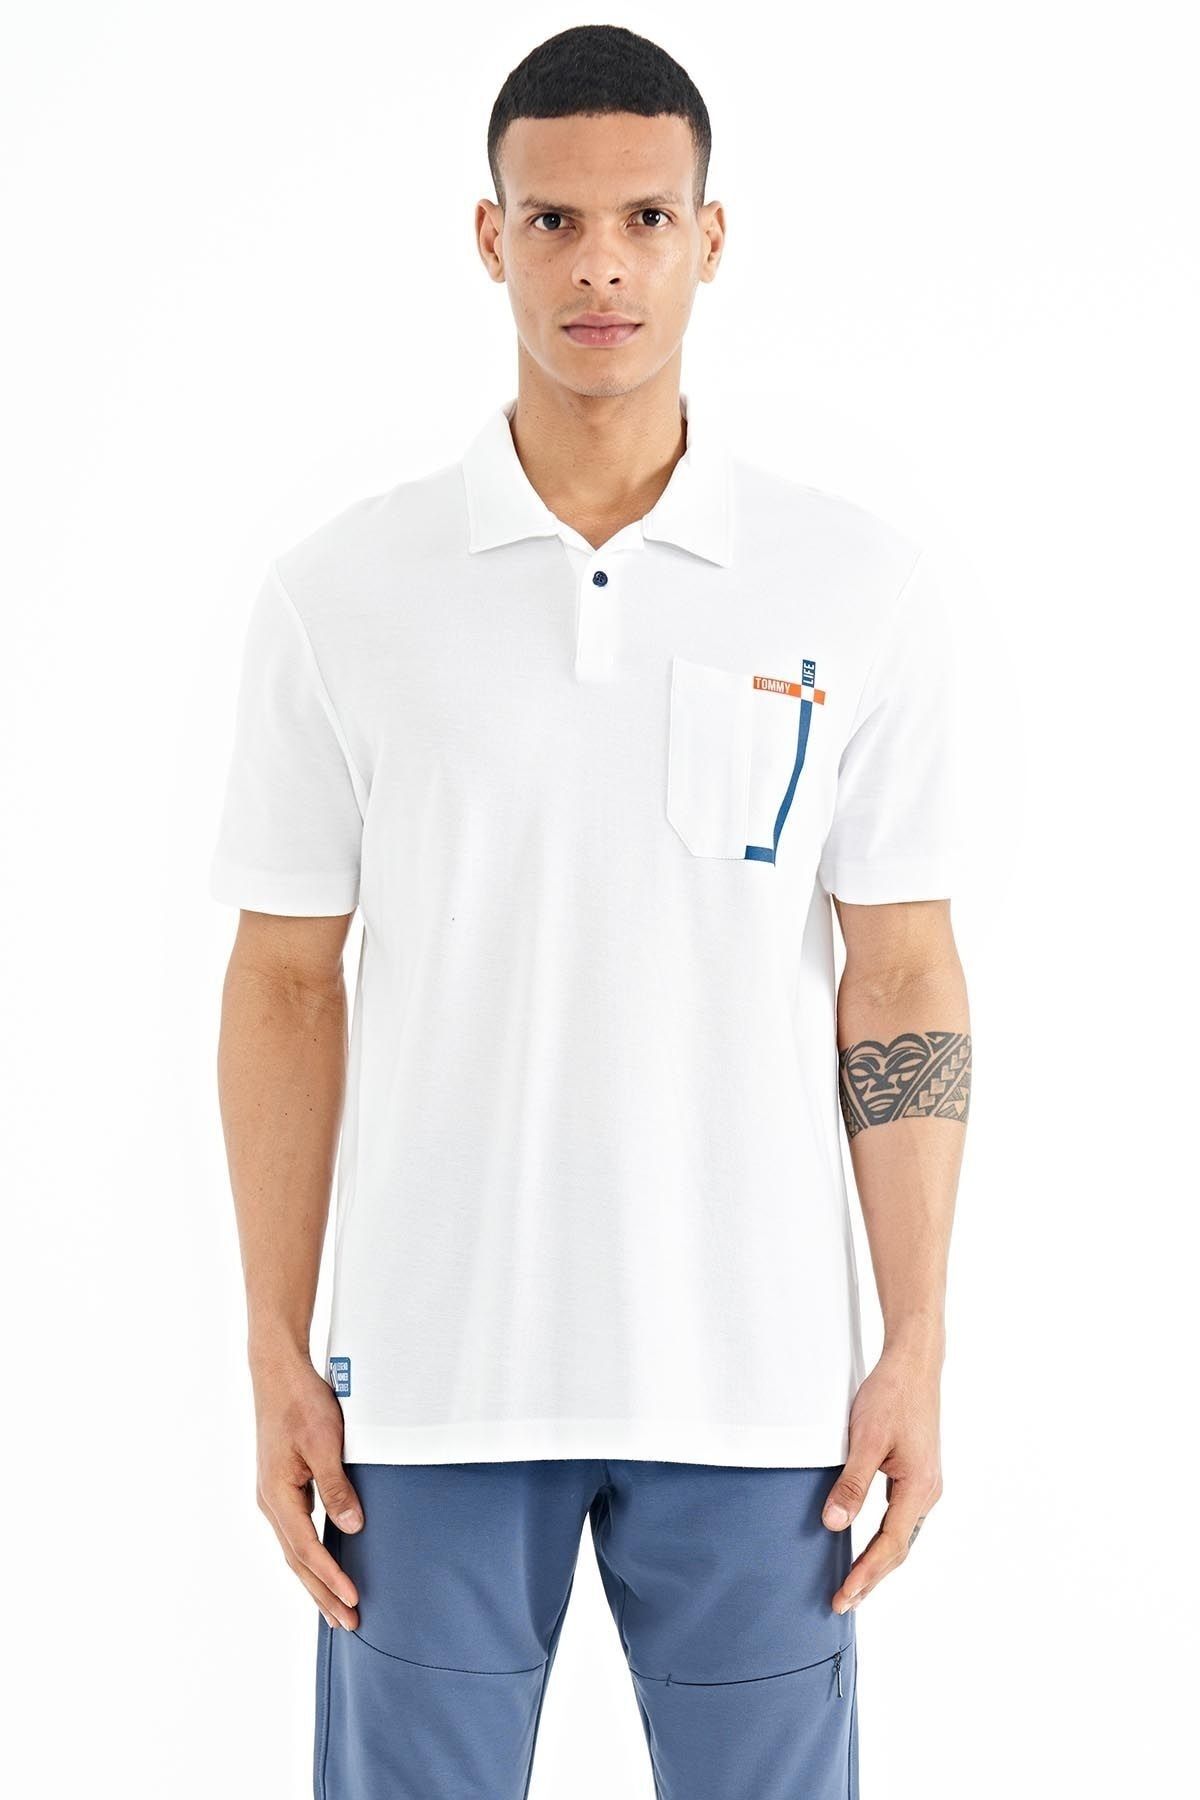 TOMMY LIFE Beyaz Cep Detaylı Baskılı Standart Kalıp Polo Yaka Erkek T-shirt - 88241